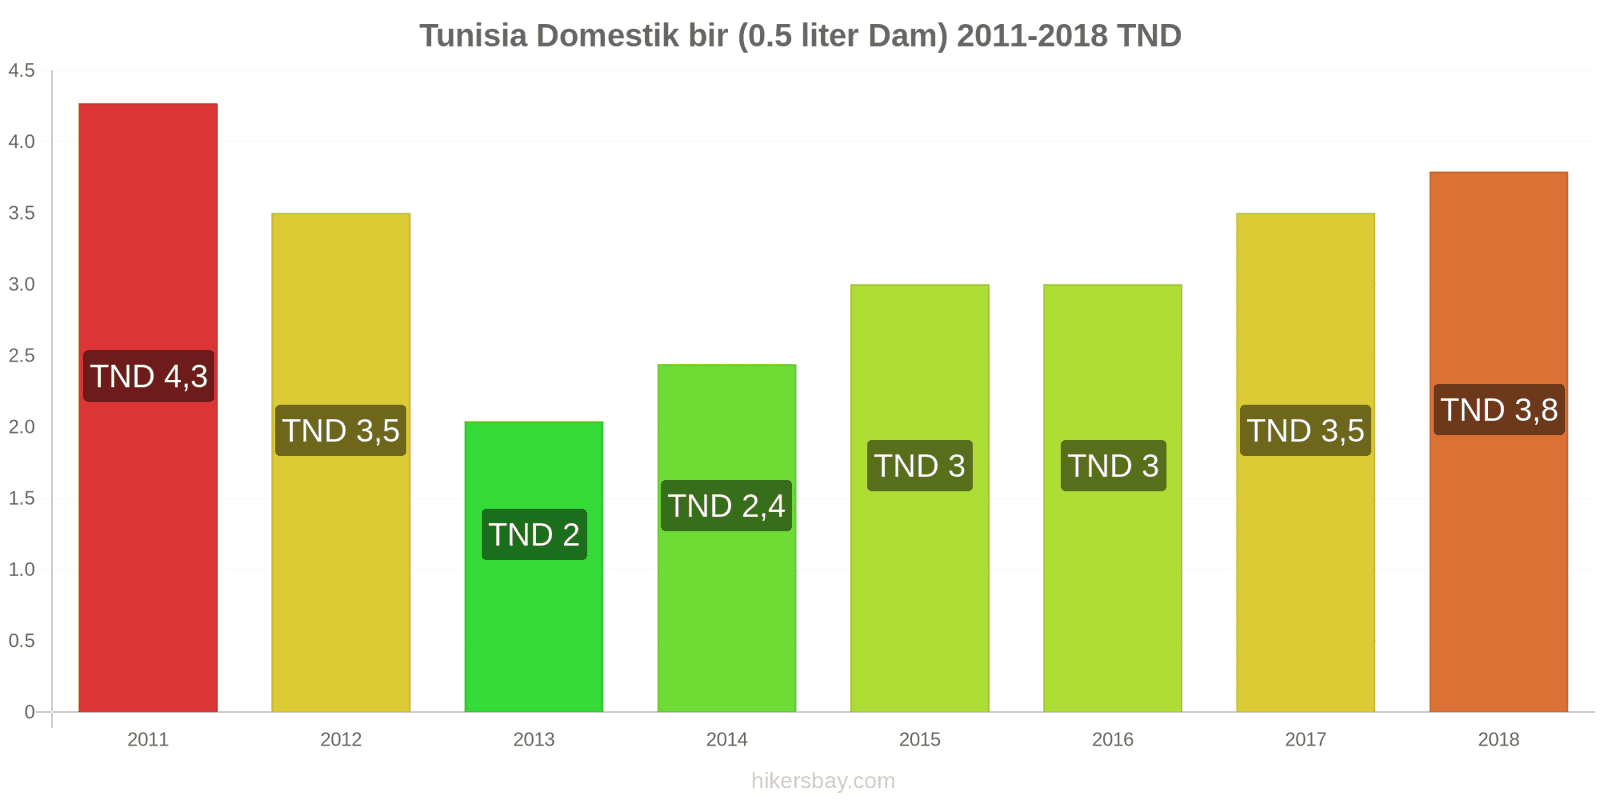 Tunisia perubahan harga Bir keran (0,5 liter) hikersbay.com